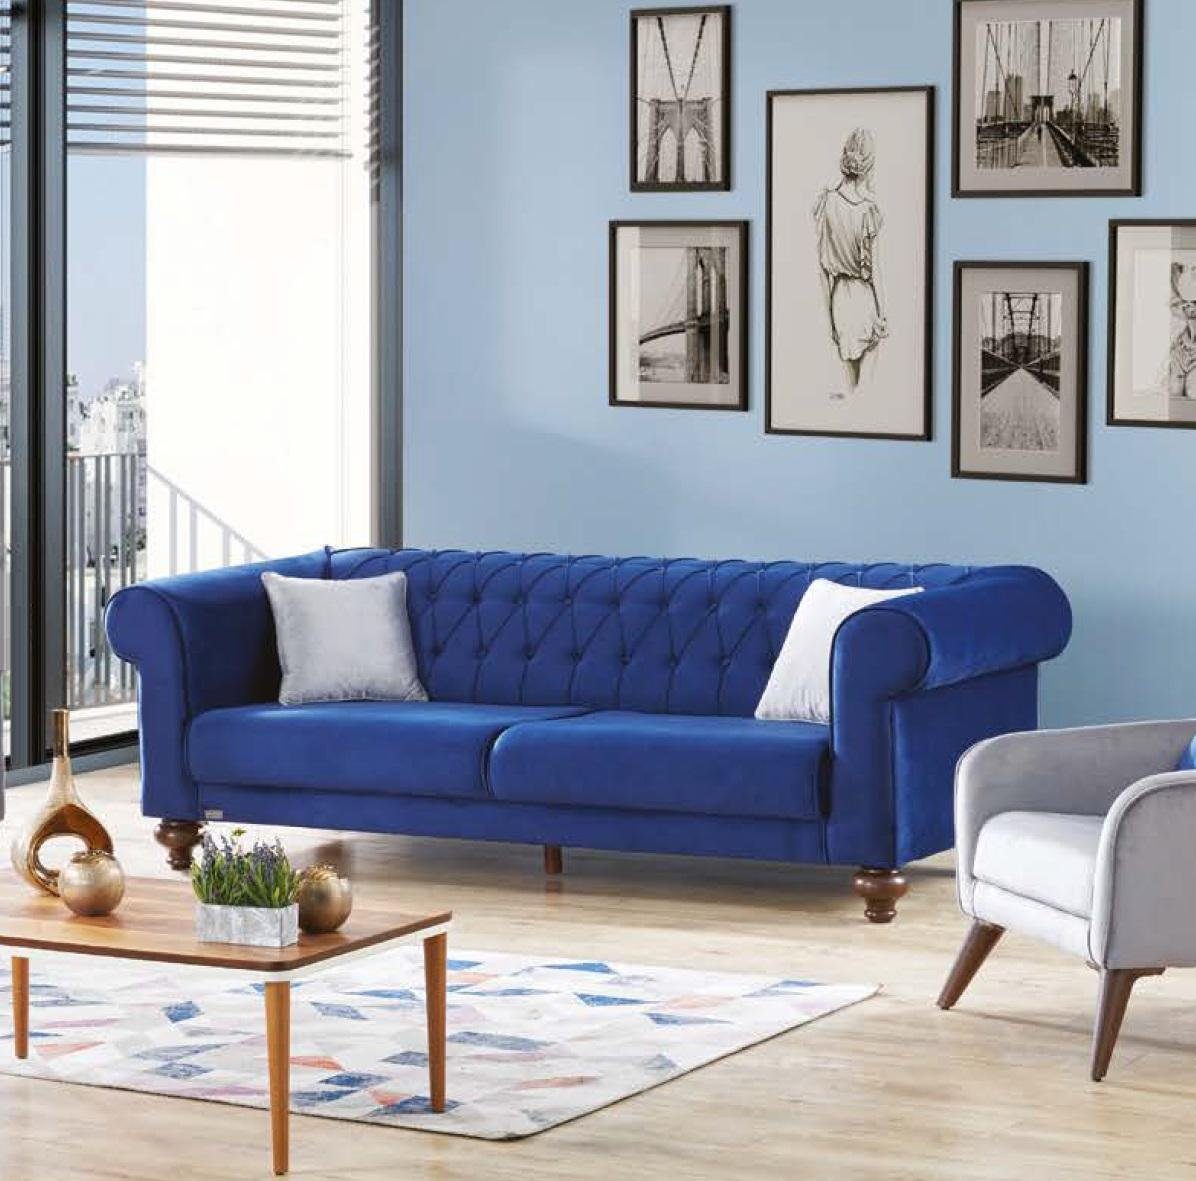 JVmoebel Sofa Blauer Dreisitzer 3 Sitzer Stoff Couch Textil Stil Sofas Couchen Möbel, Made in Europe